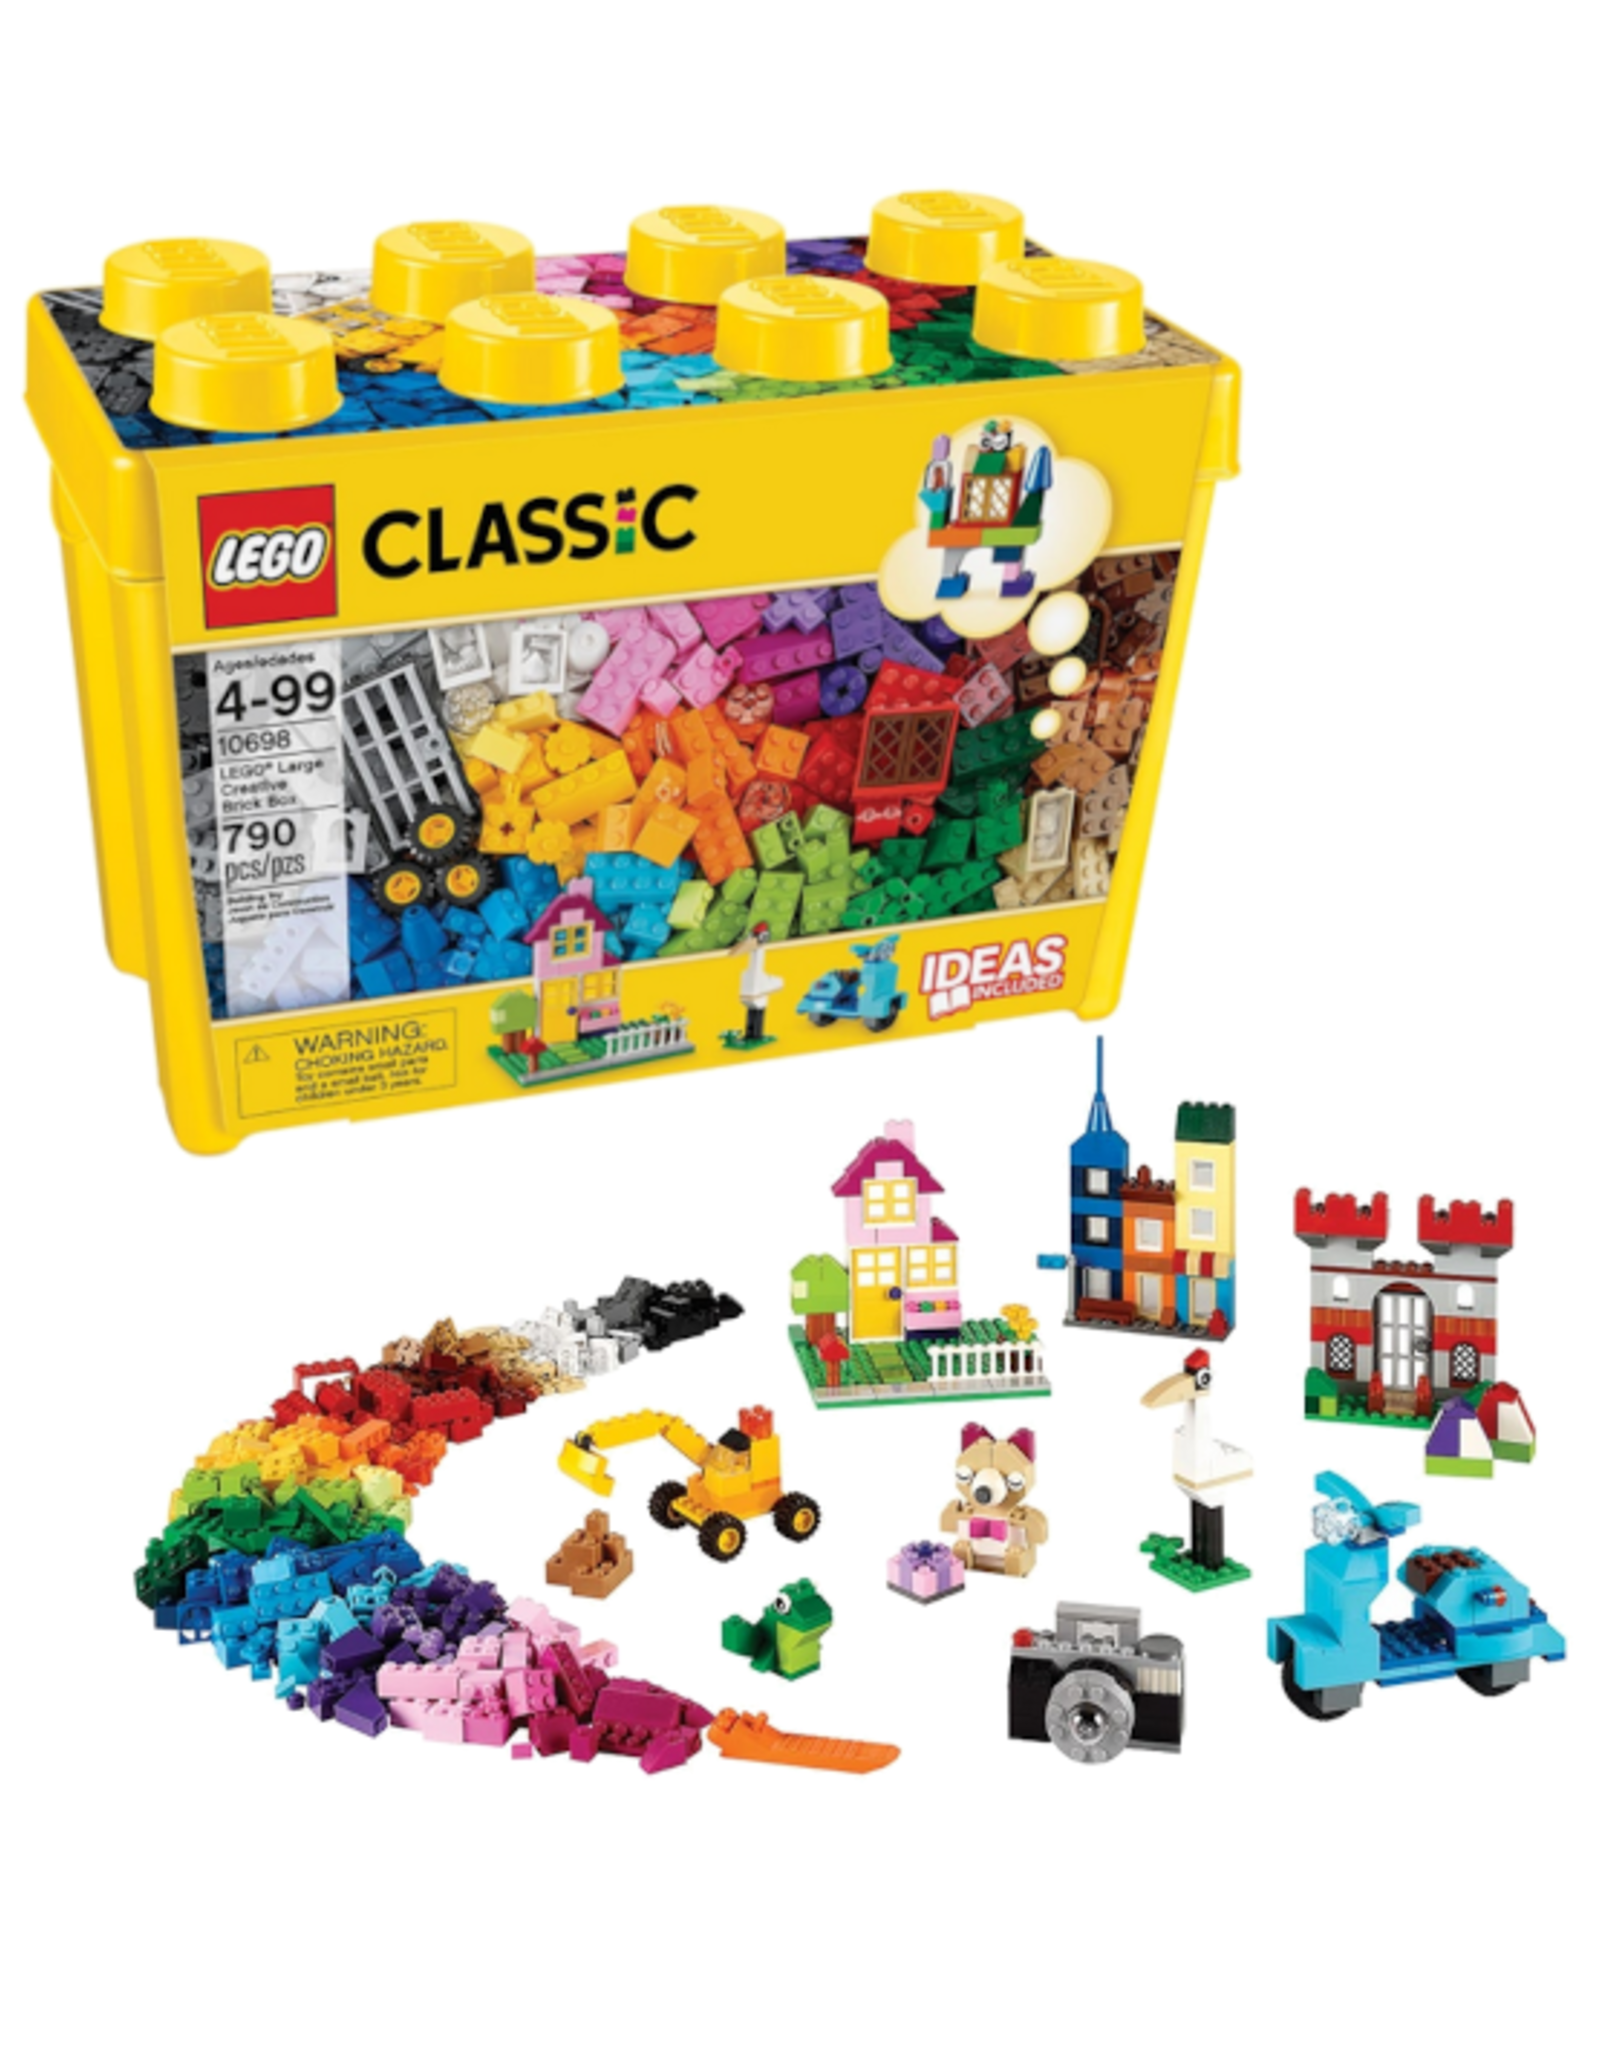 Lego Lego - Classic - 10698 - Lego Large Creative Brick Box